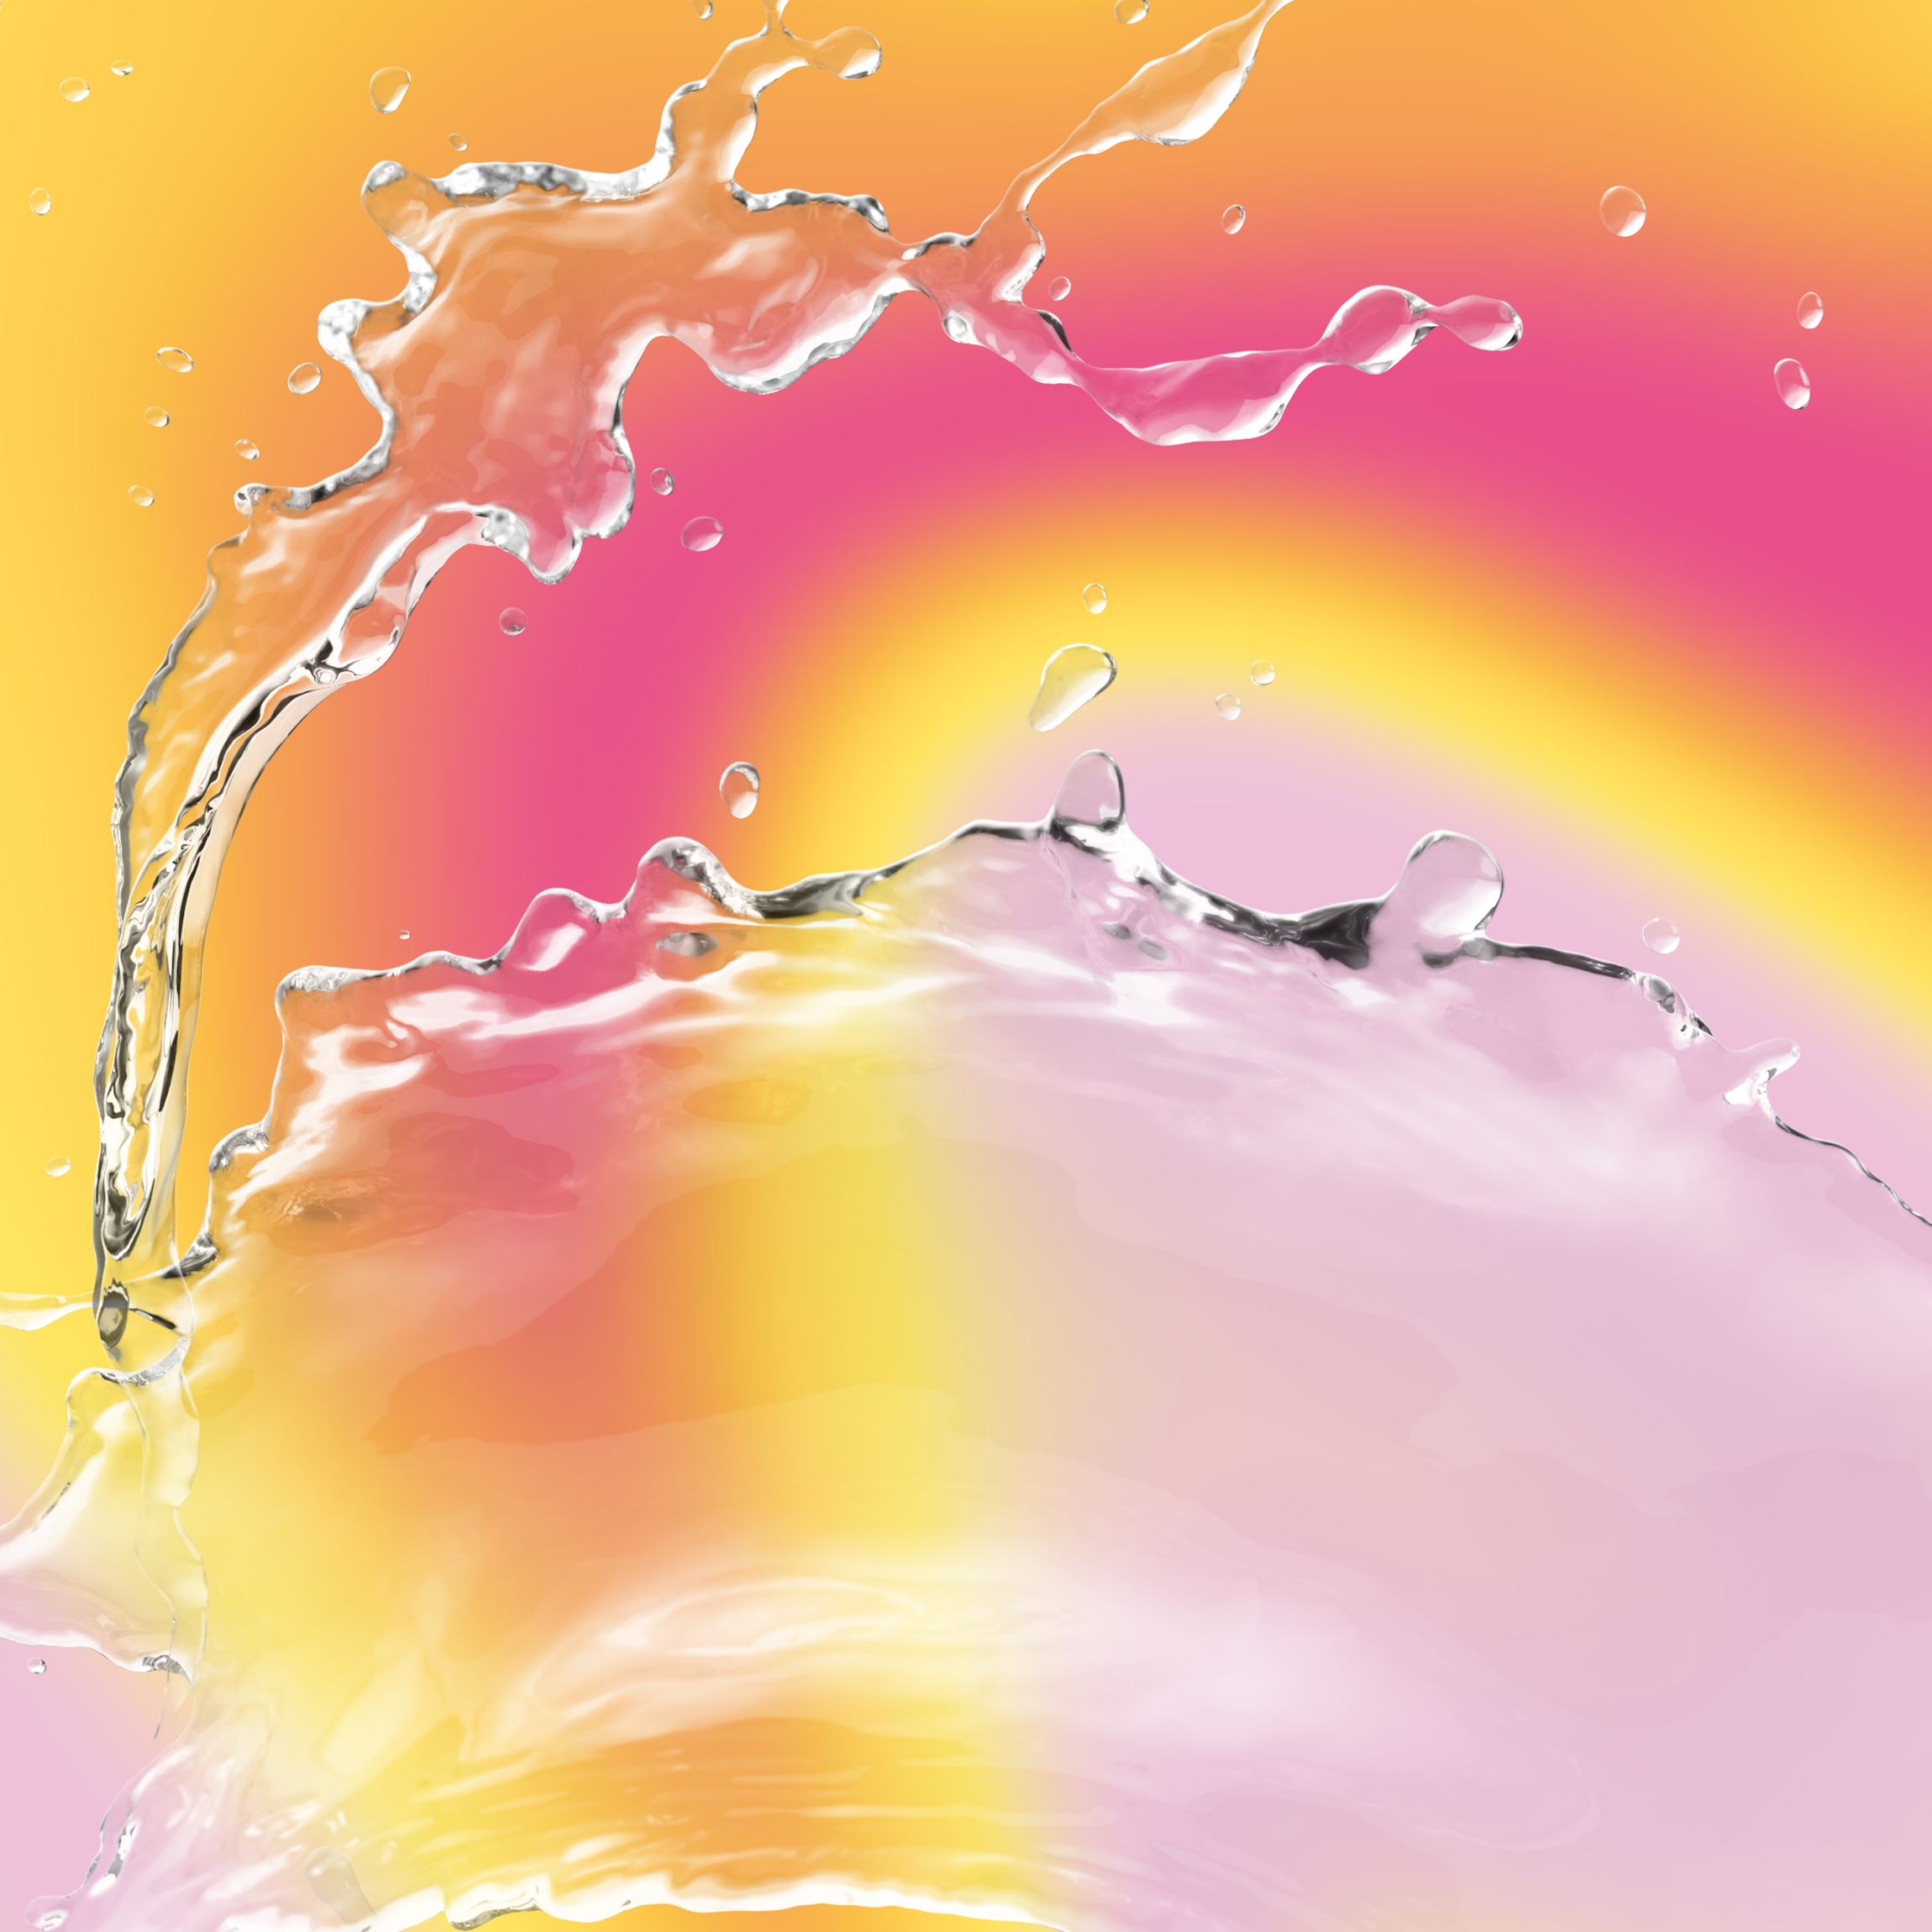 Malibu splash background